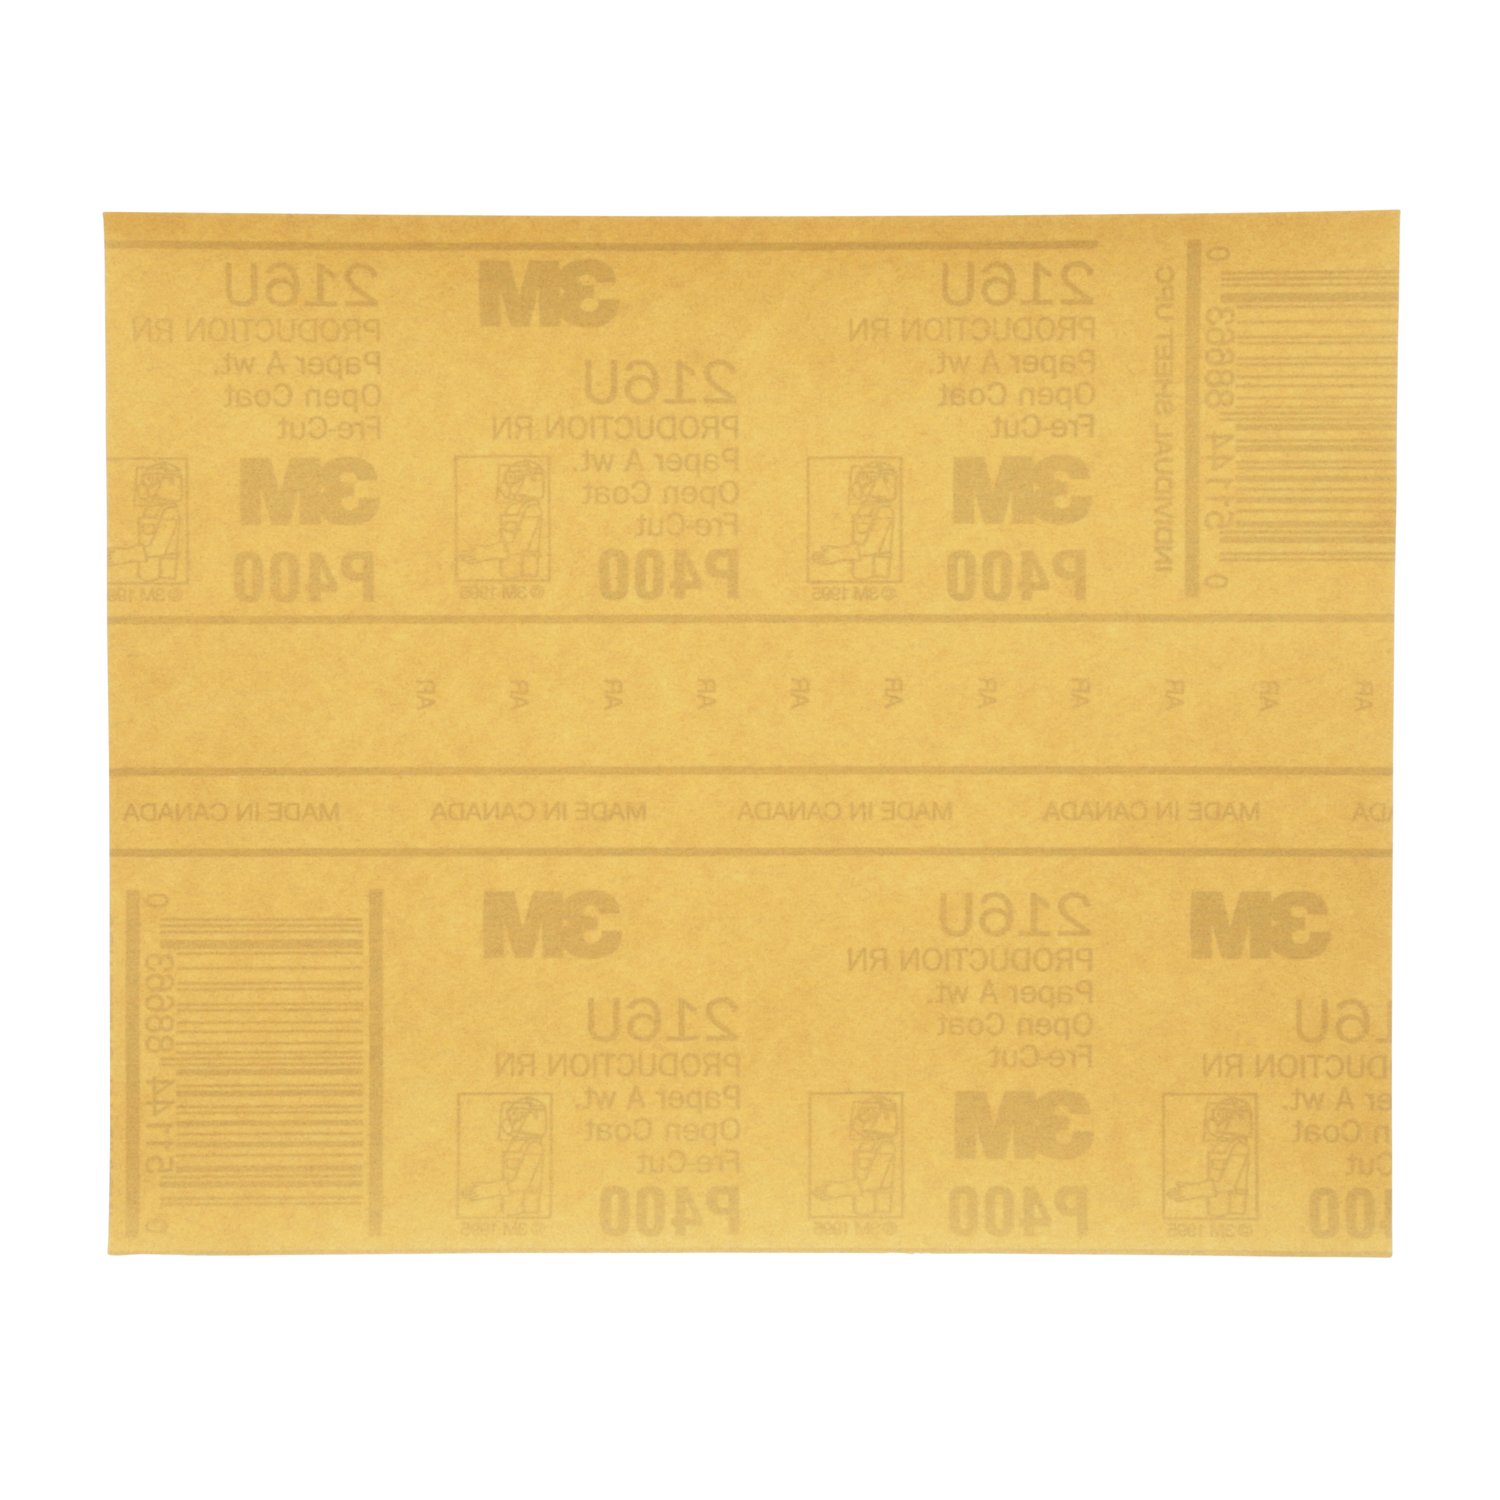 7000118278 - 3M Gold Abrasive Sheet, 02539, P400 grade, 9 in x 11 in, 50 sheets per
pack, 5 packs per case